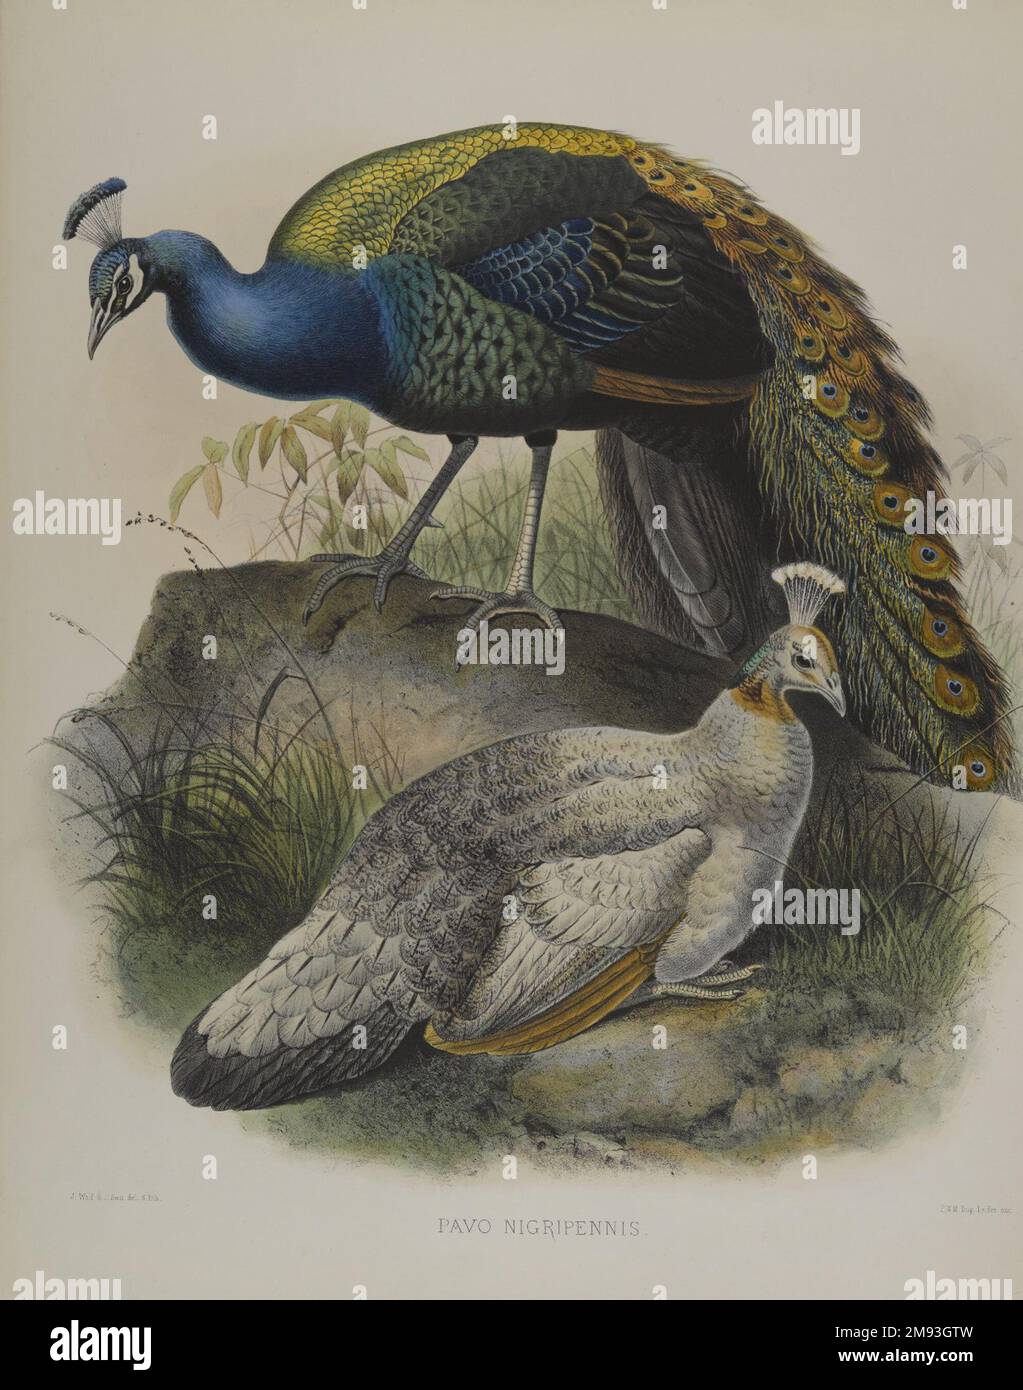 Pavo Nigripennis - Schwarzschulter Erbsenvögel Daniel Giraud Elliott (Amerikanisch, 1835-1915).. Farblithographie auf gewebtem Papier, 23 1/4 x 18 1/8 Zoll (59,1 x 46 cm). Diese zwei ornithologischen Abdrücke zeigen Vögel mit blauem Gefieder: Einen westlichen Sumpfhahn und einen schwarzen Pfau. Die Drucke von Gould und Elliot – zwei der berühmtesten Vogelkünstler des 19. Jahrhunderts – waren handgefärbt, um einen Eindruck lebendiger Lebensweise zu vermitteln, und sind wissenschaftlich genau und künstlerisch fesselnd. Beide Männer waren bedeutende Naturhistoriker und beruhten auf direkter Beobachtung, Reisen Stockfoto